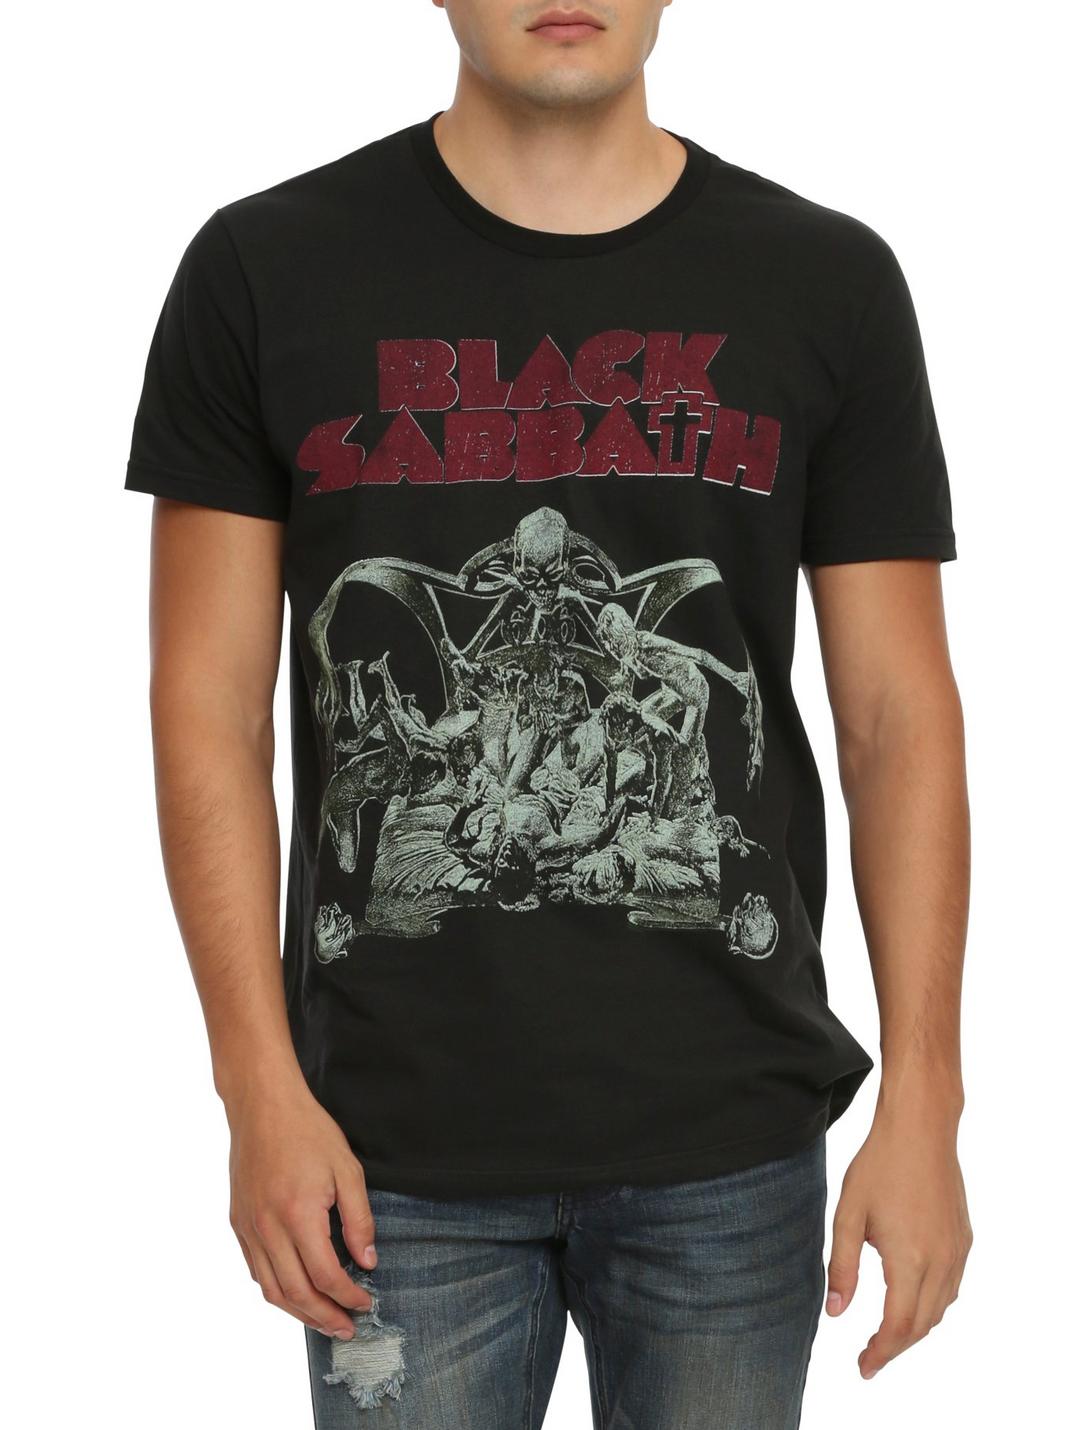 Black Sabbath Sabbath Bloody Sabbath T-Shirt, BLACK, hi-res